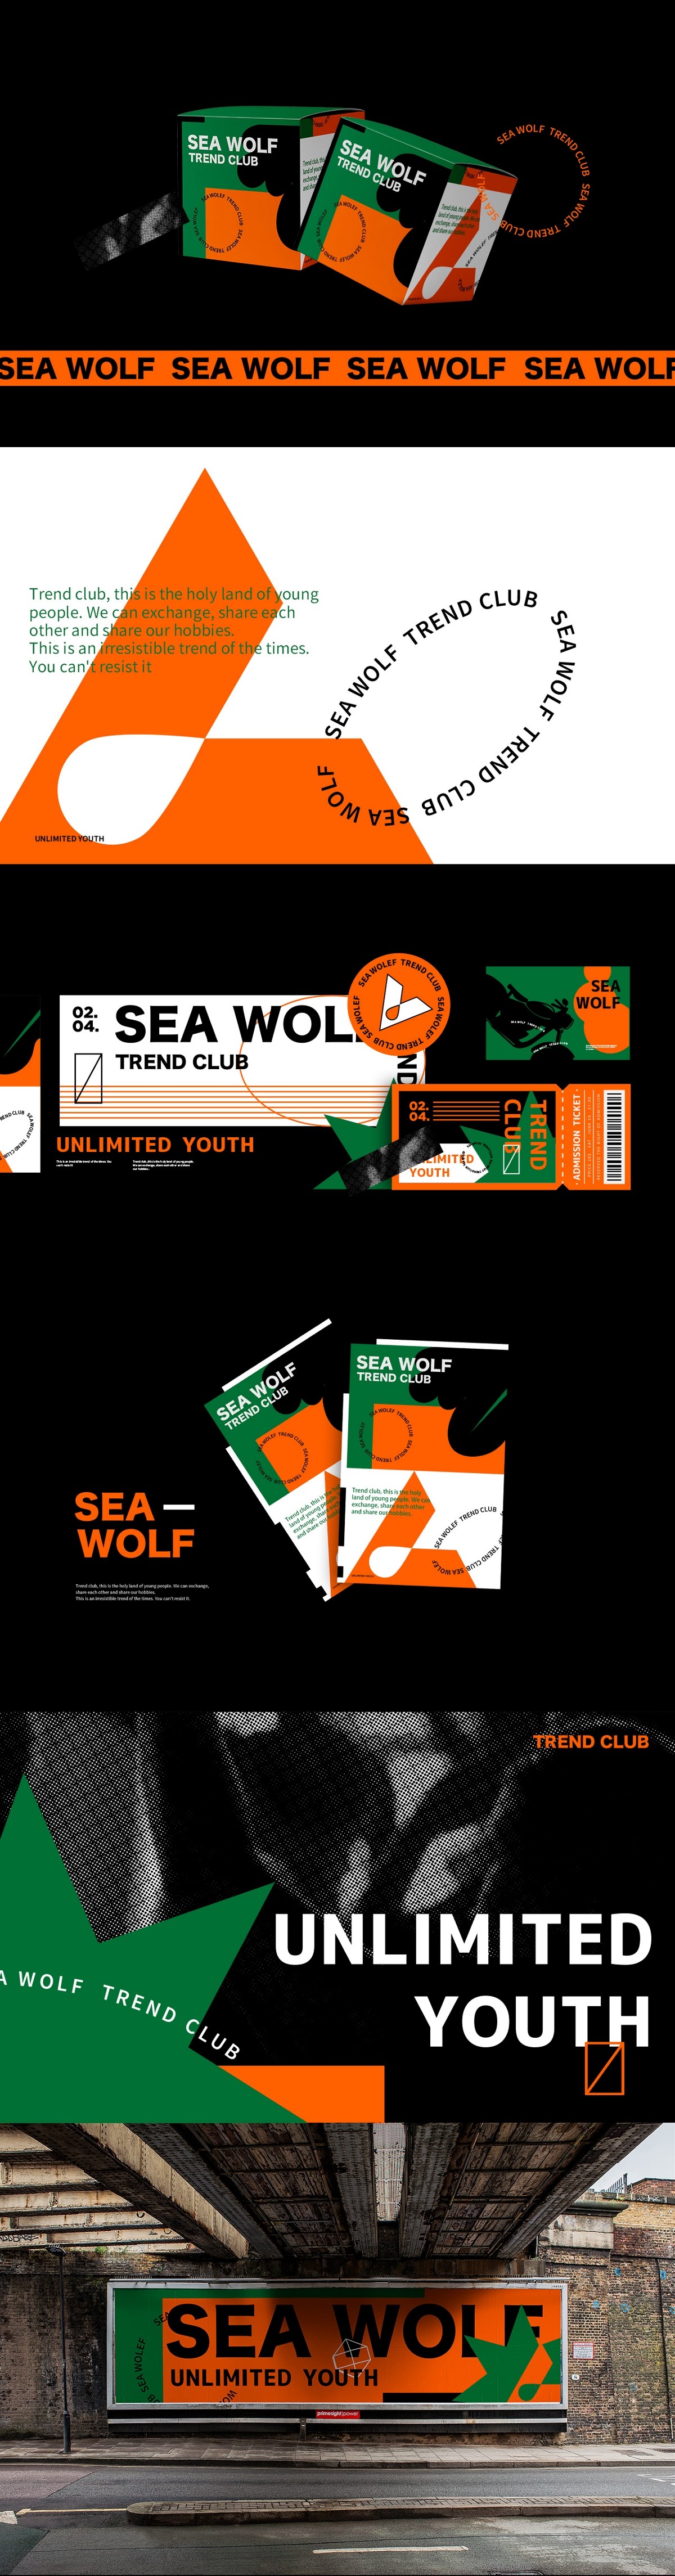 SEA WOLF-TREND CLUB